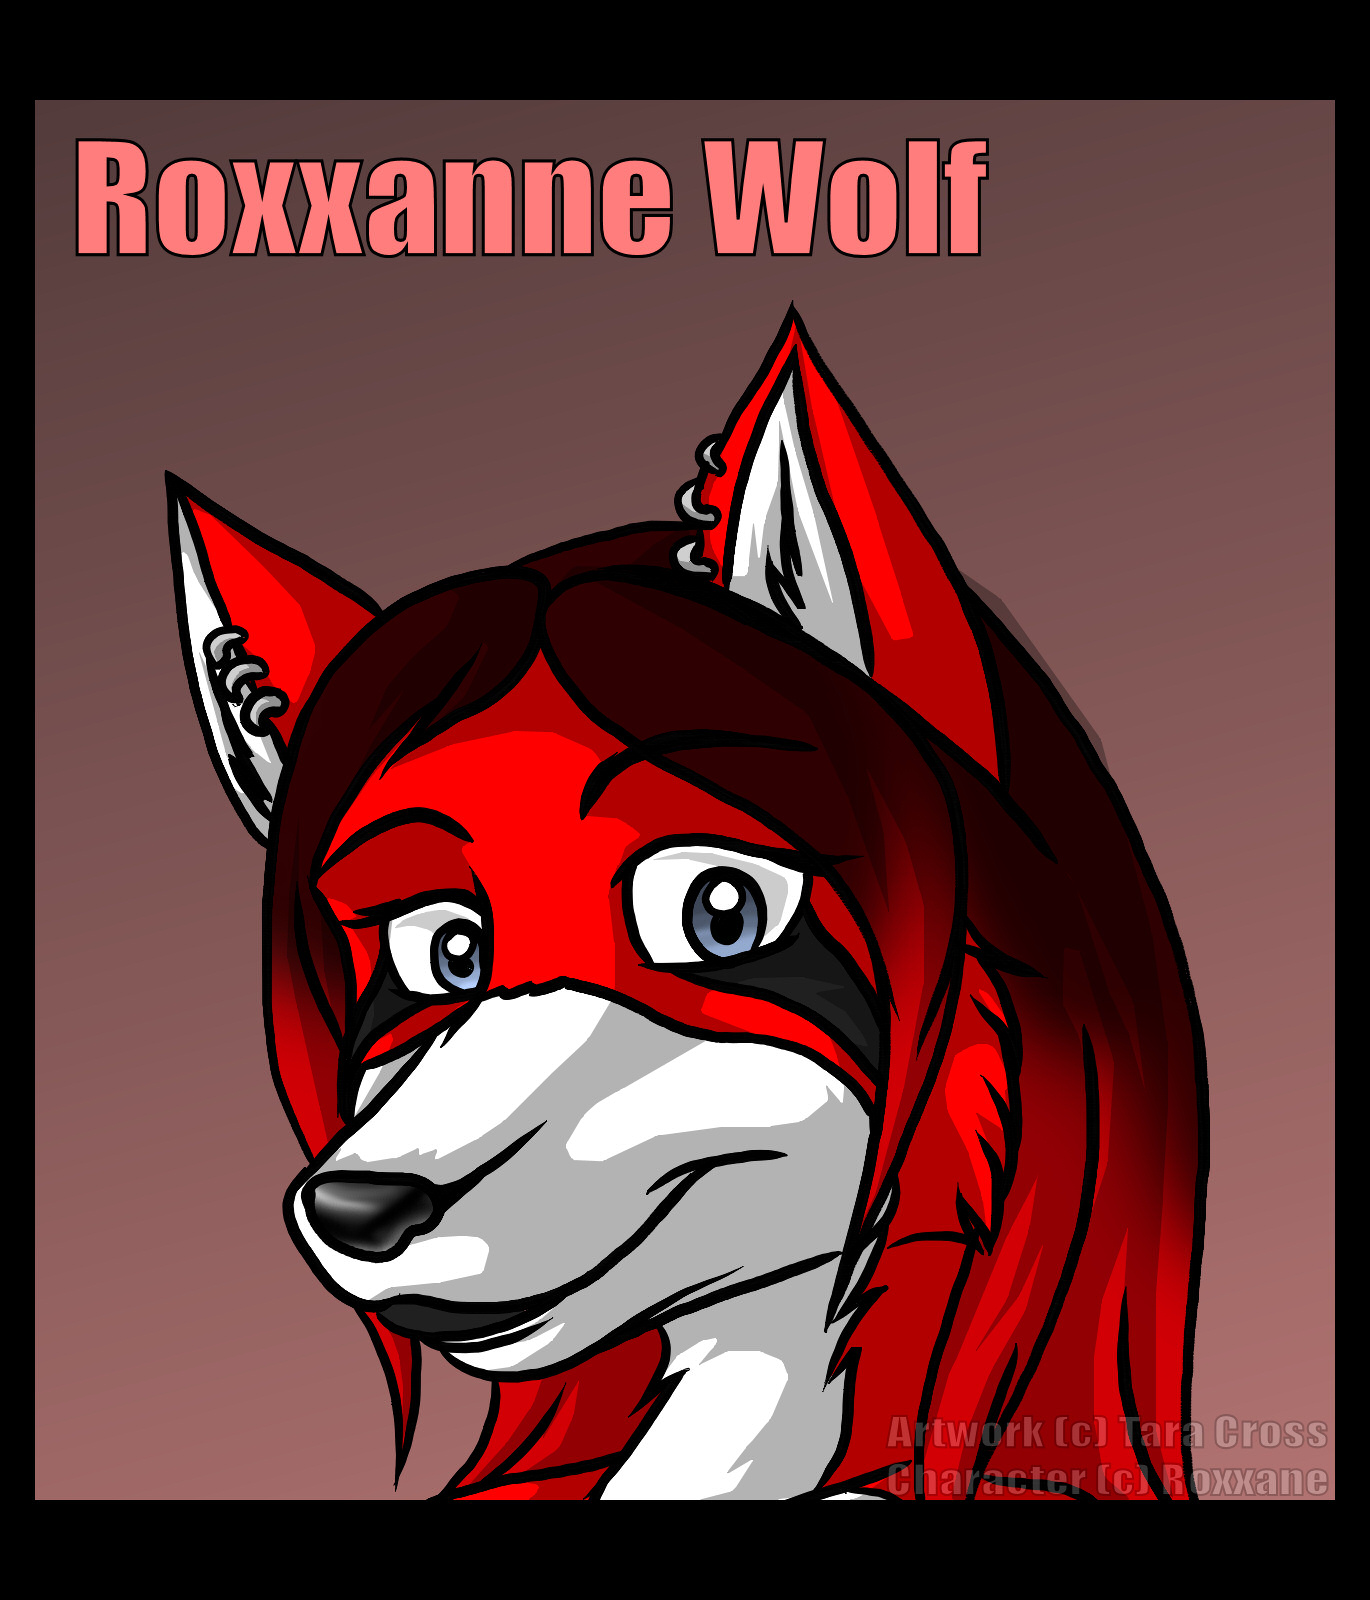 Prize - For Roxxanne